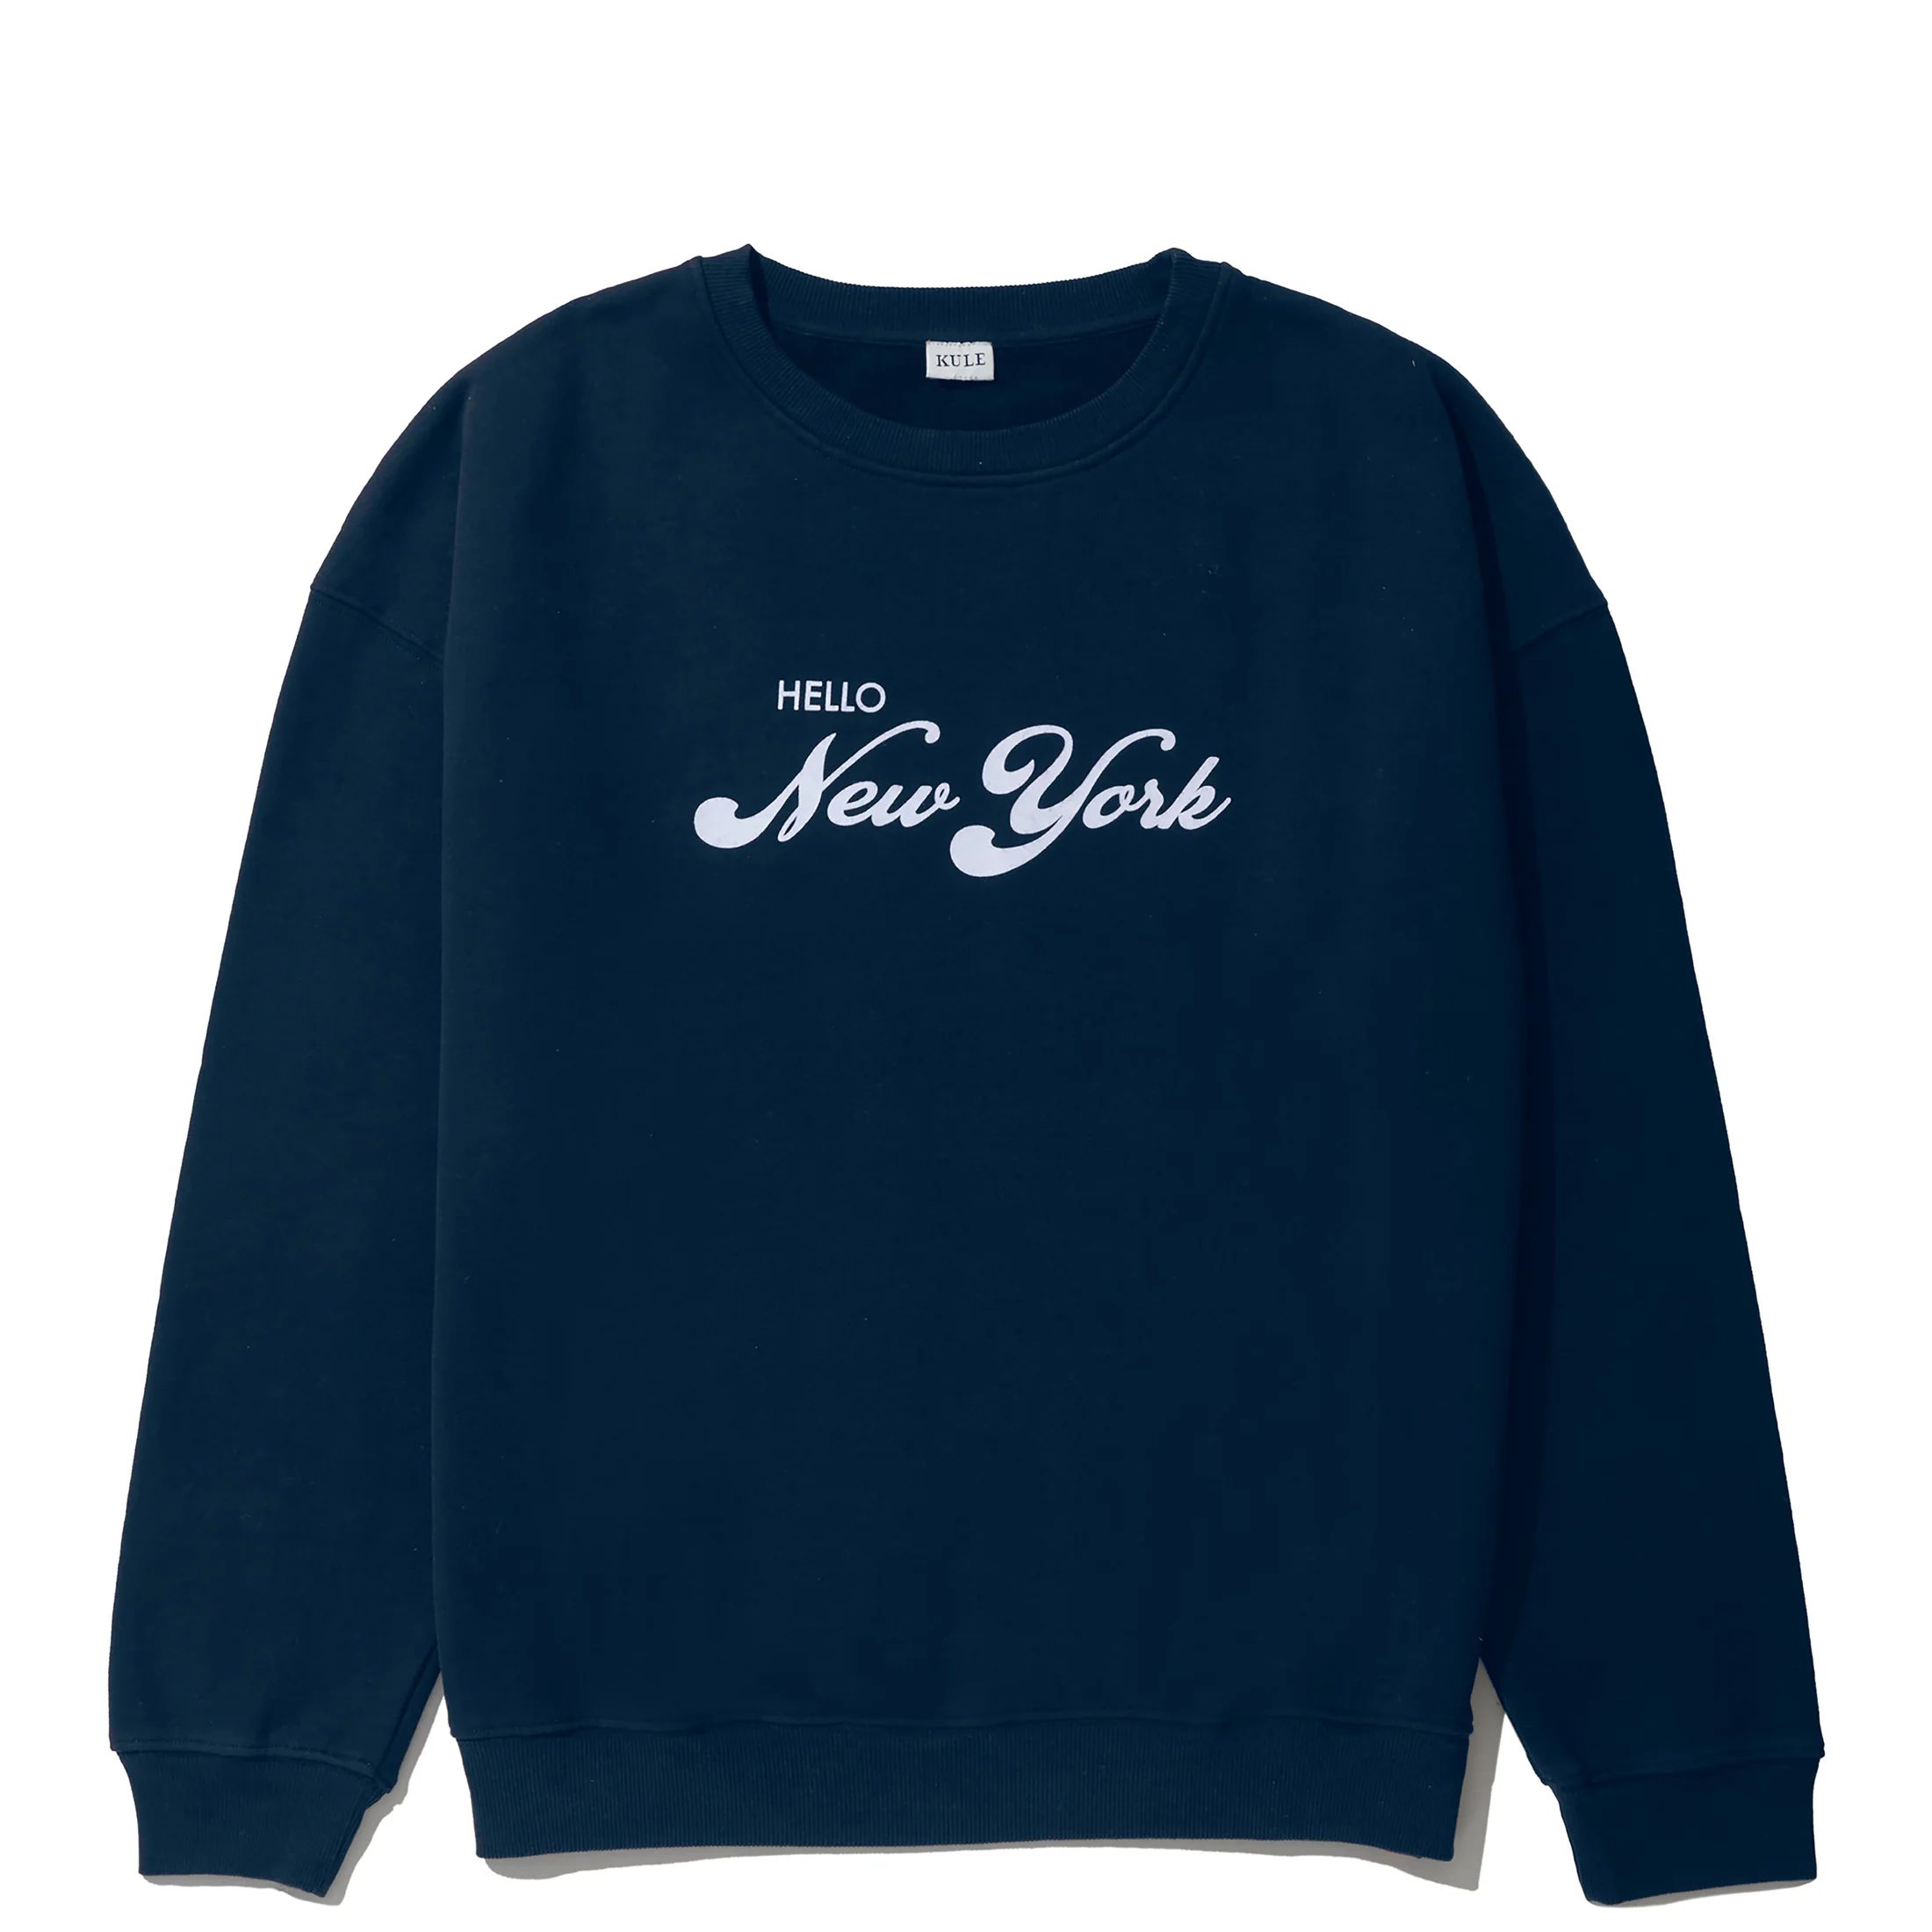 The Oversized Hello New York Sweatshirt | KULE (US)